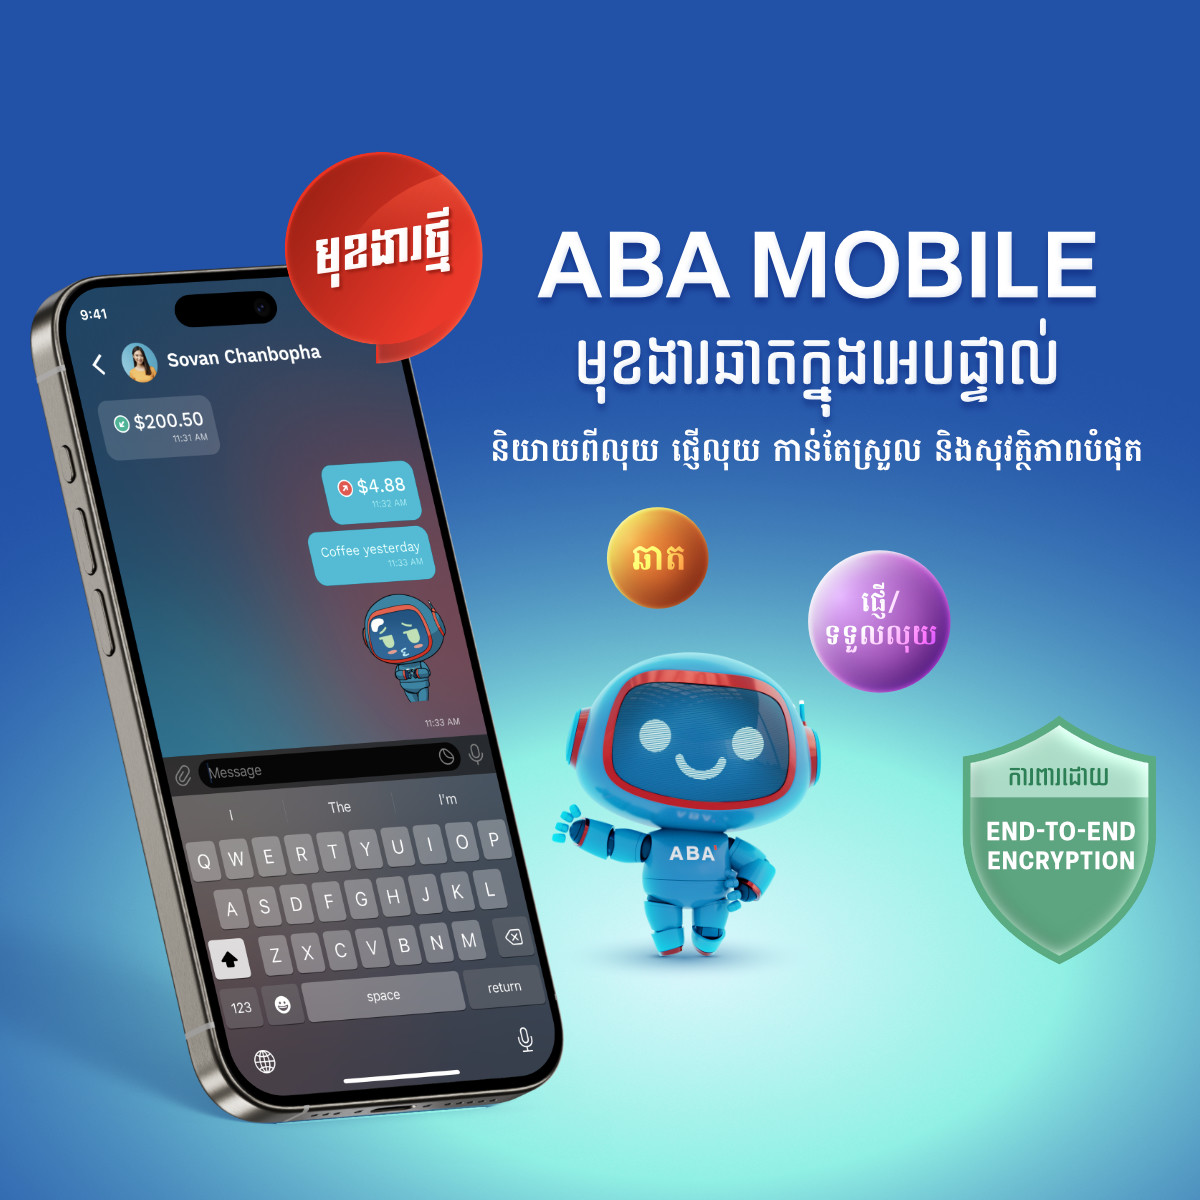 សូមណែនាំ មុខងារថ្មី ក្នុងកម្មវិធី ABA Mobile ឆាតក្នុងអេបផ្ទាល់(ABA Mobile In-App Chat) សម្រាប់ការសន្ទនារឿងហិរញ្ញវត្ថុប្រកបដោយសុវត្ថិភាព!